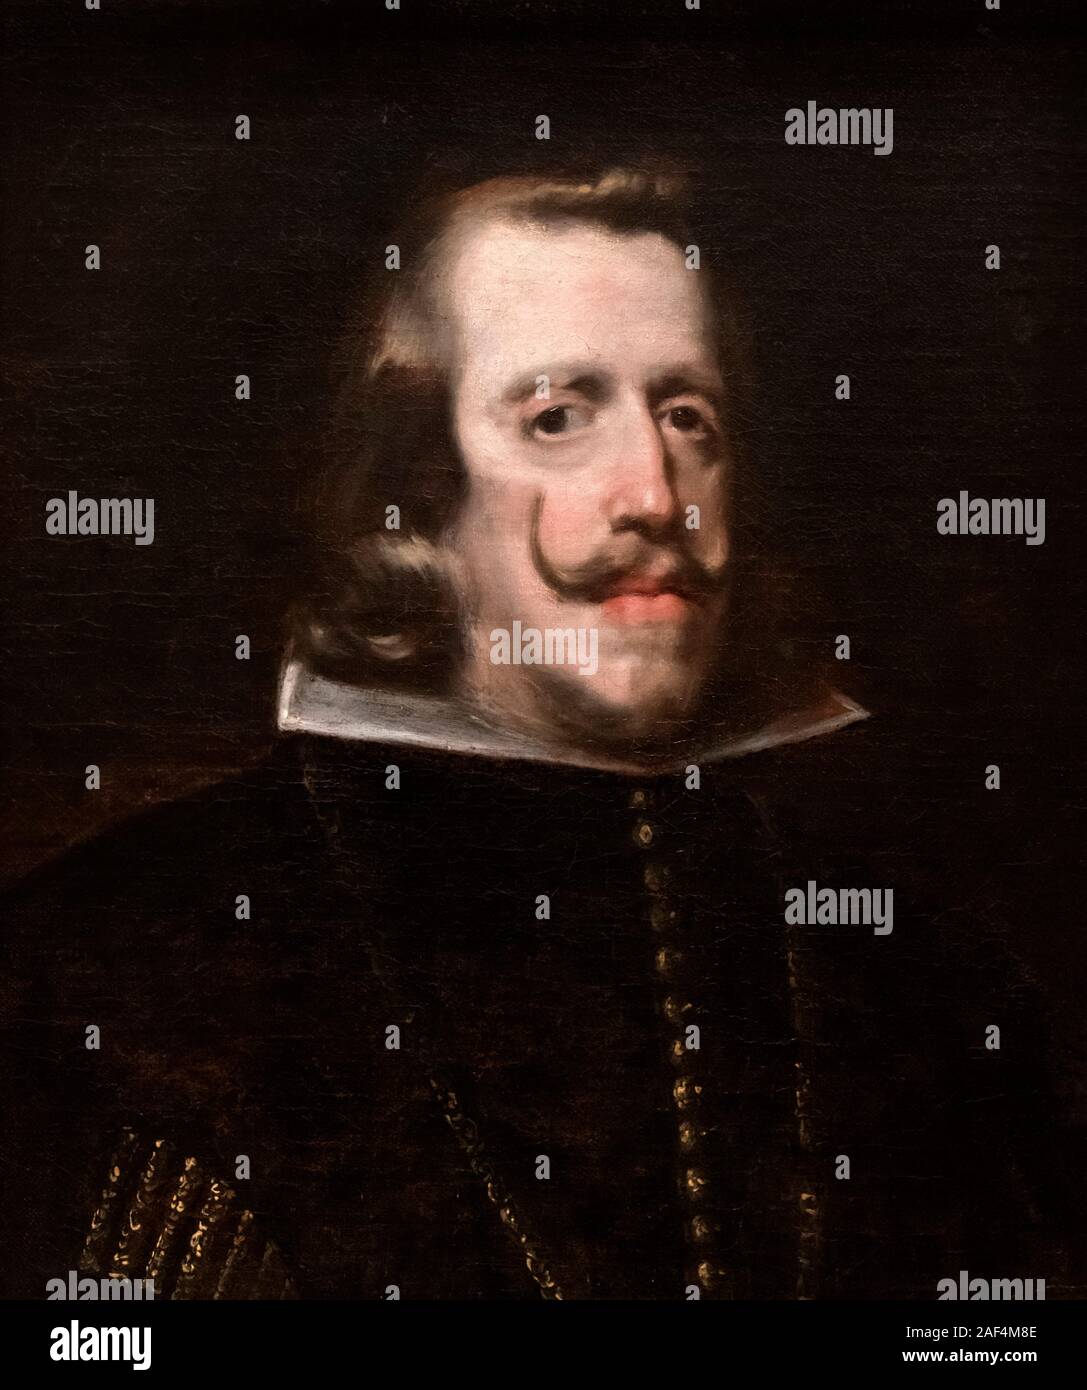 Philippe IV d'Espagne. Portrait du roi Philippe IV d'Espagne par l'atelier de Diego Velazquez, huile sur toile, c.1655 Banque D'Images